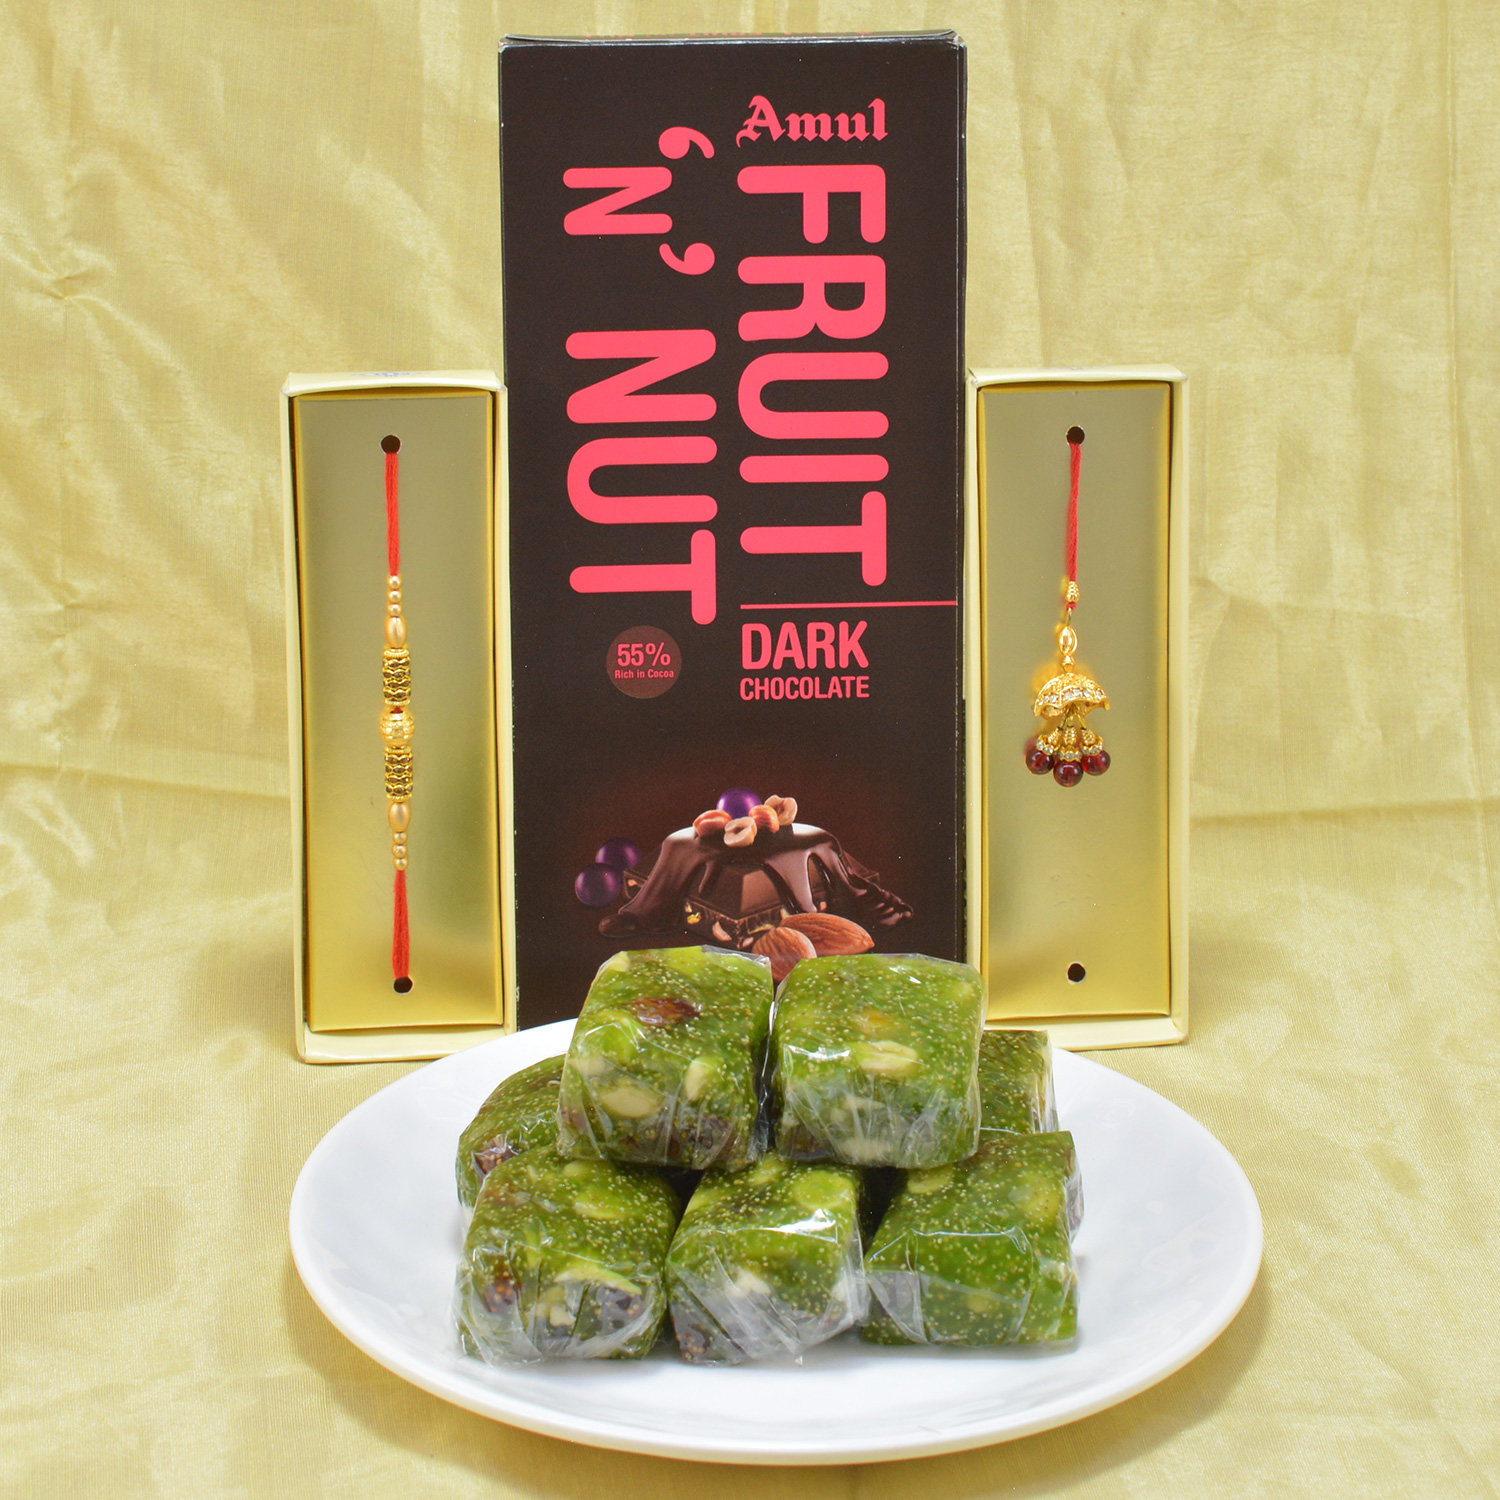 Amazing Golden Beads Bhaiya Bhabhi Rakhi with Delicious Kaju Anjeer Halwa along with Yummy Amul Dark Chocolate